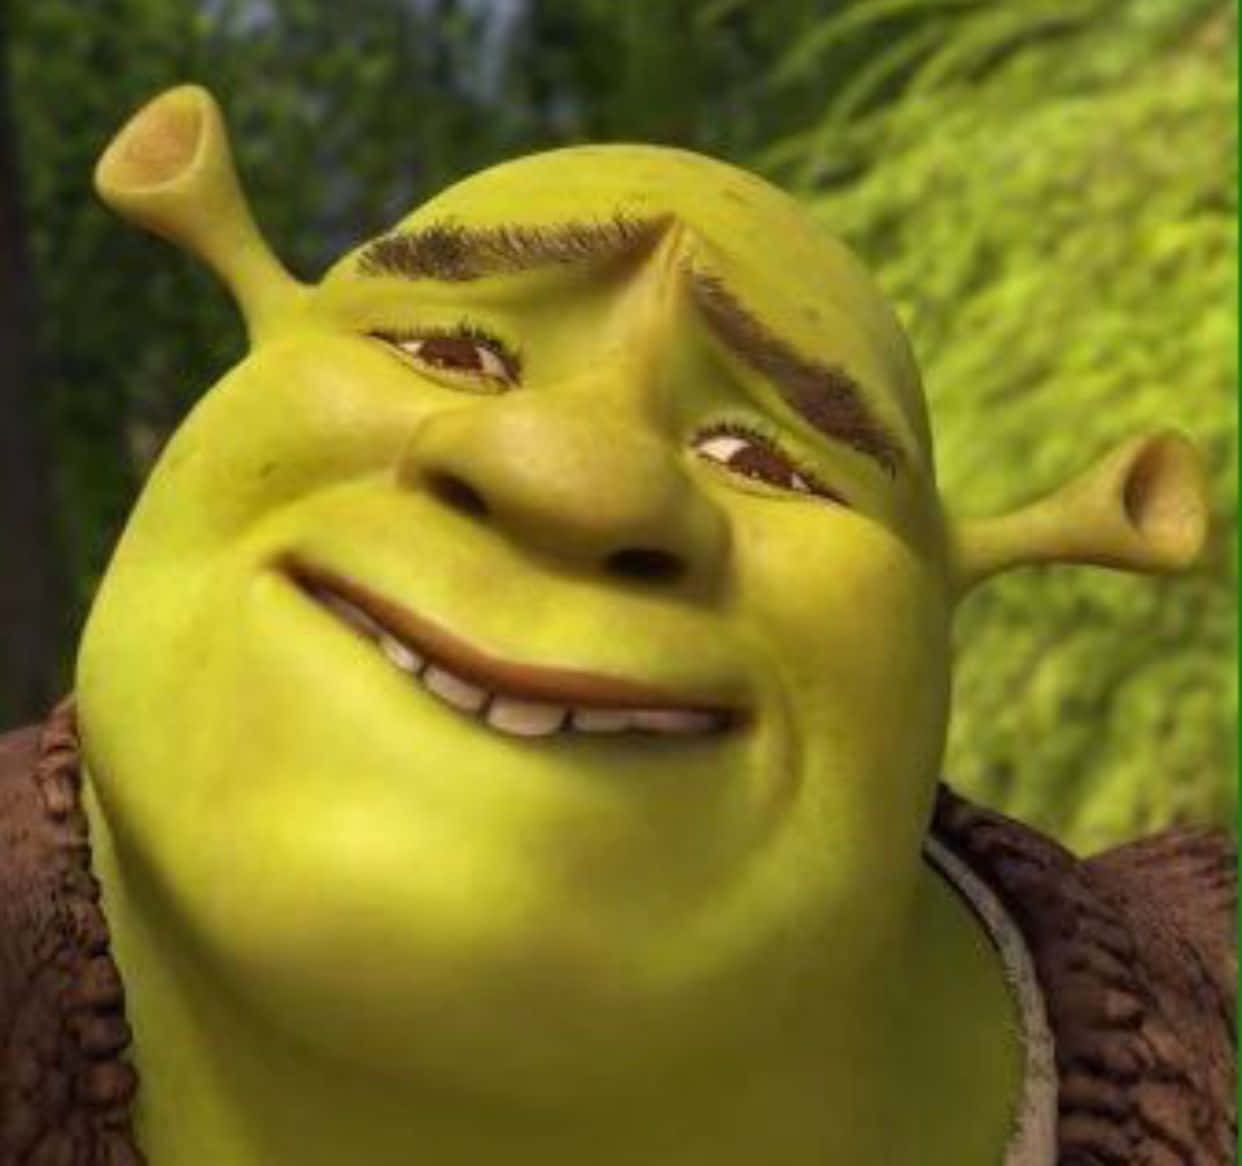 Shrek is all Smiles!